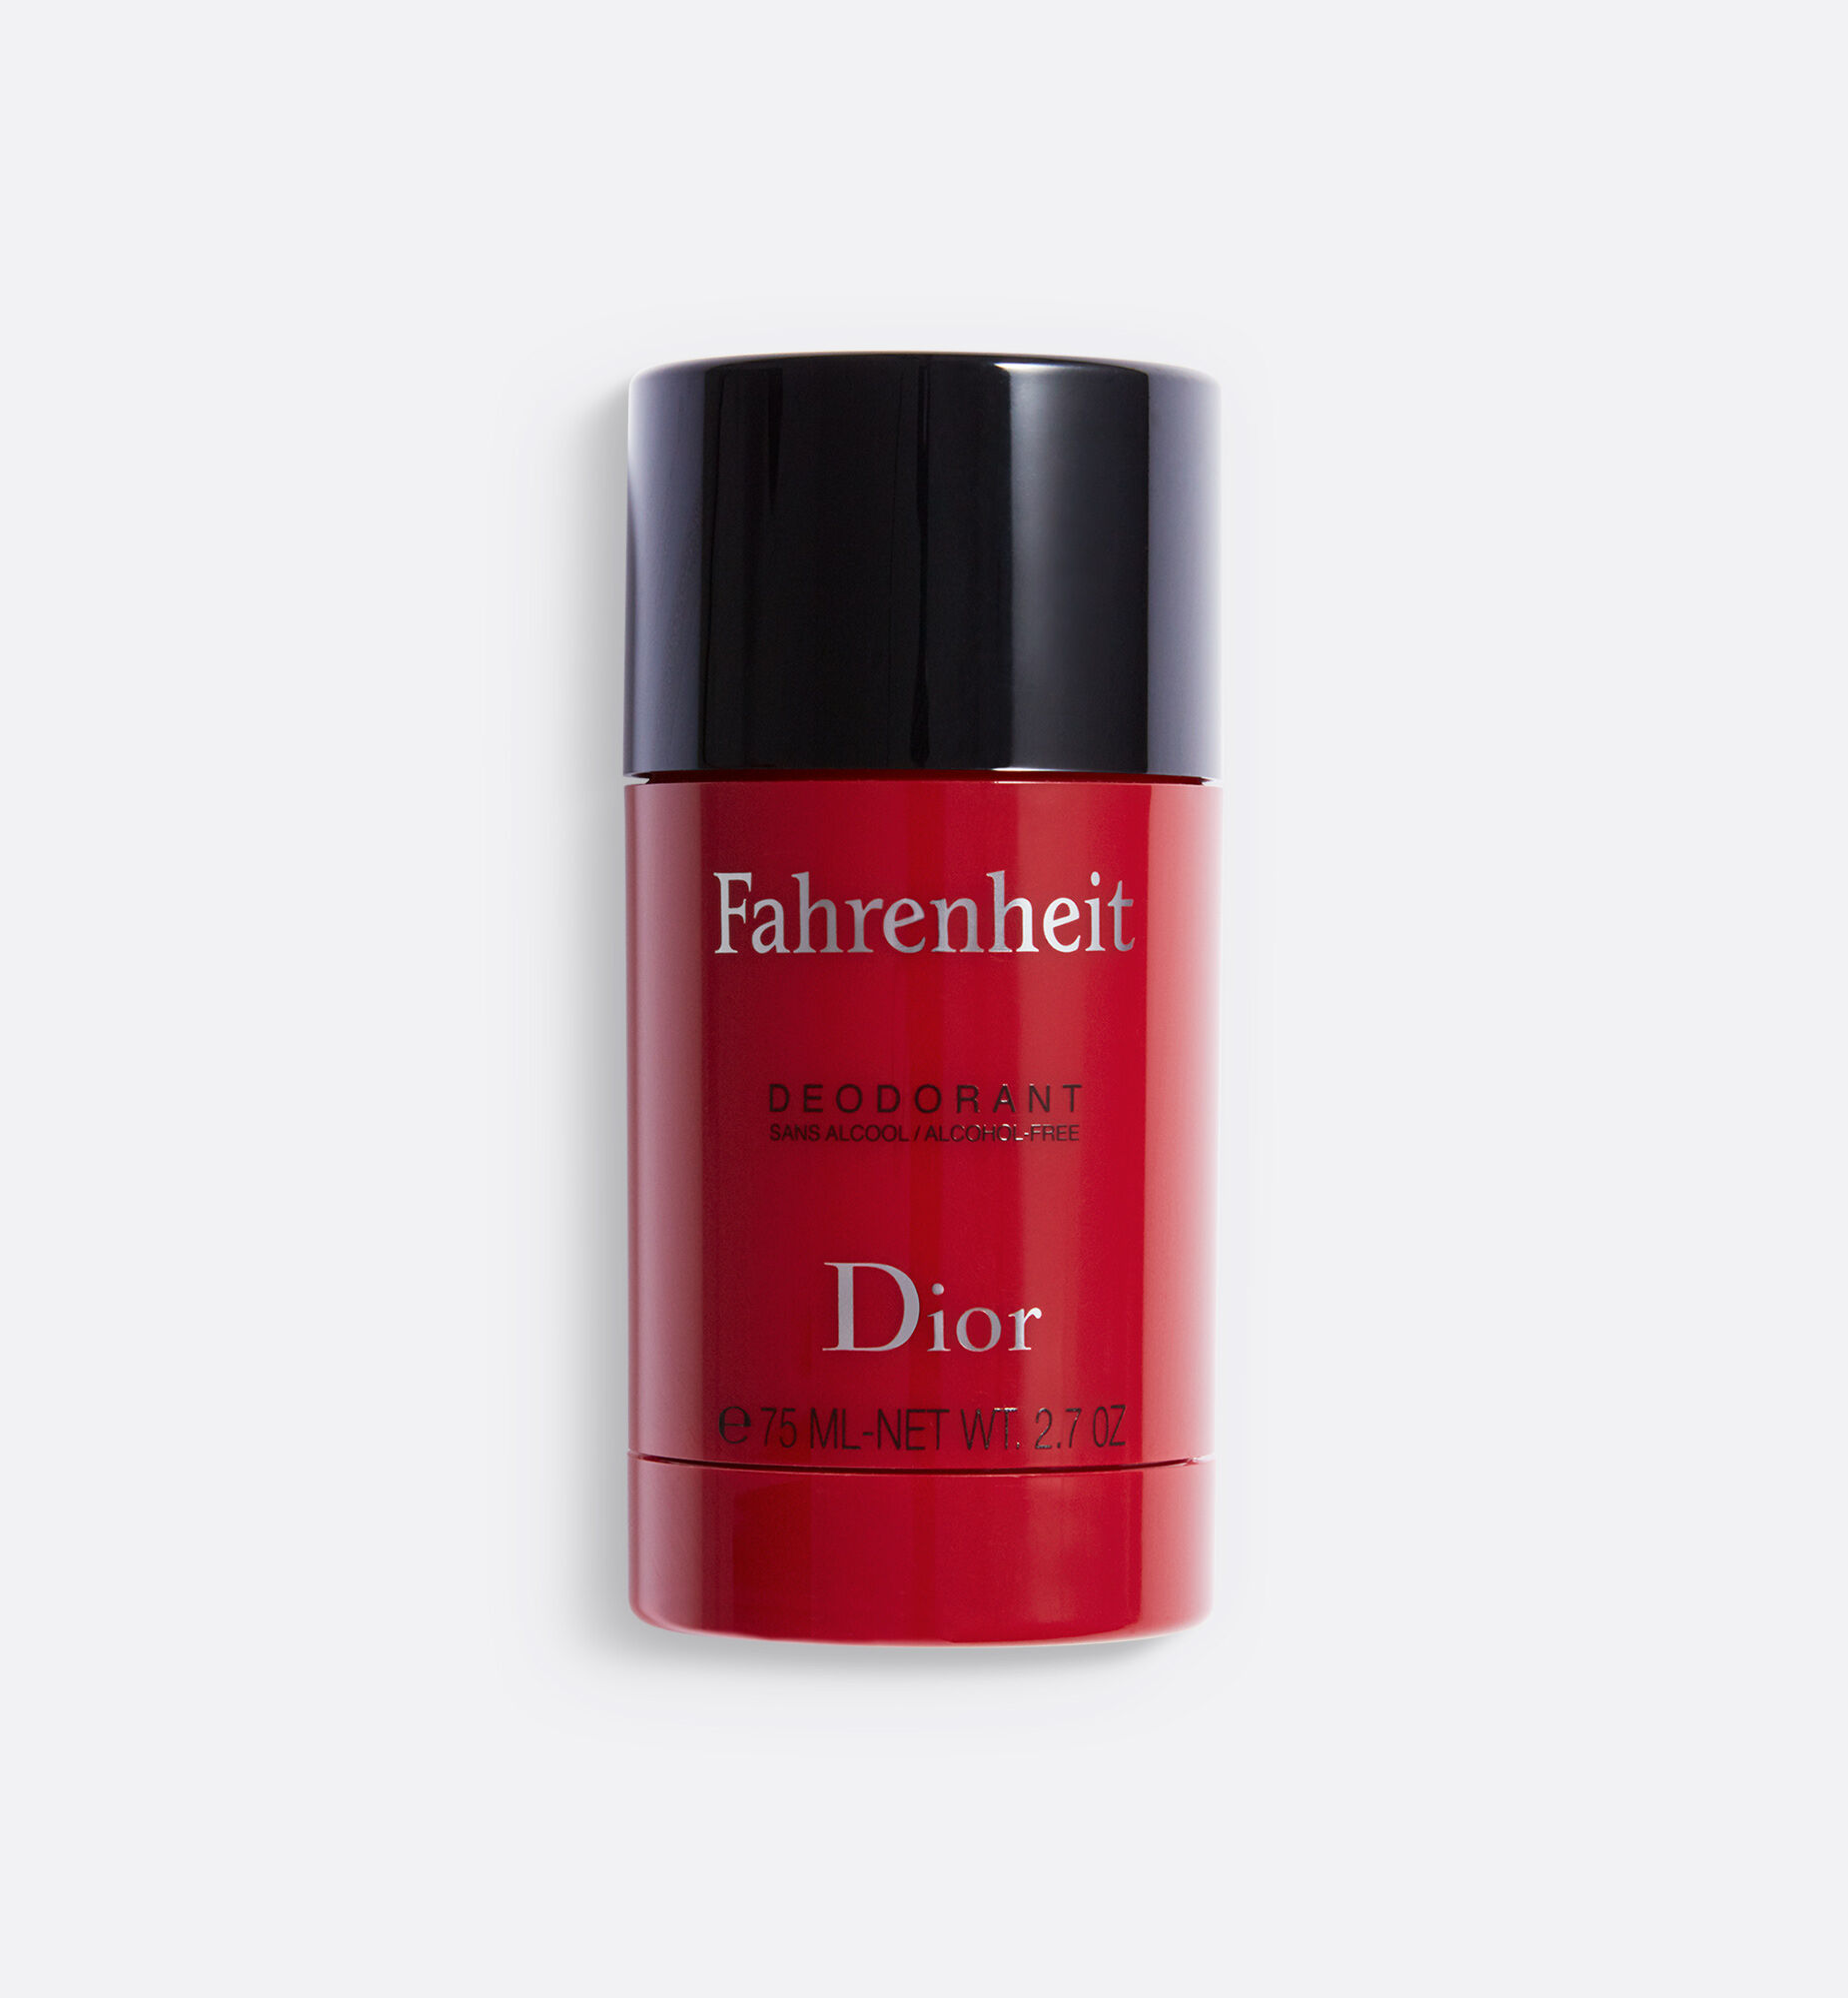 Nước hoa Dior Fahrenheit Parfum 75ml  Theperfumevn